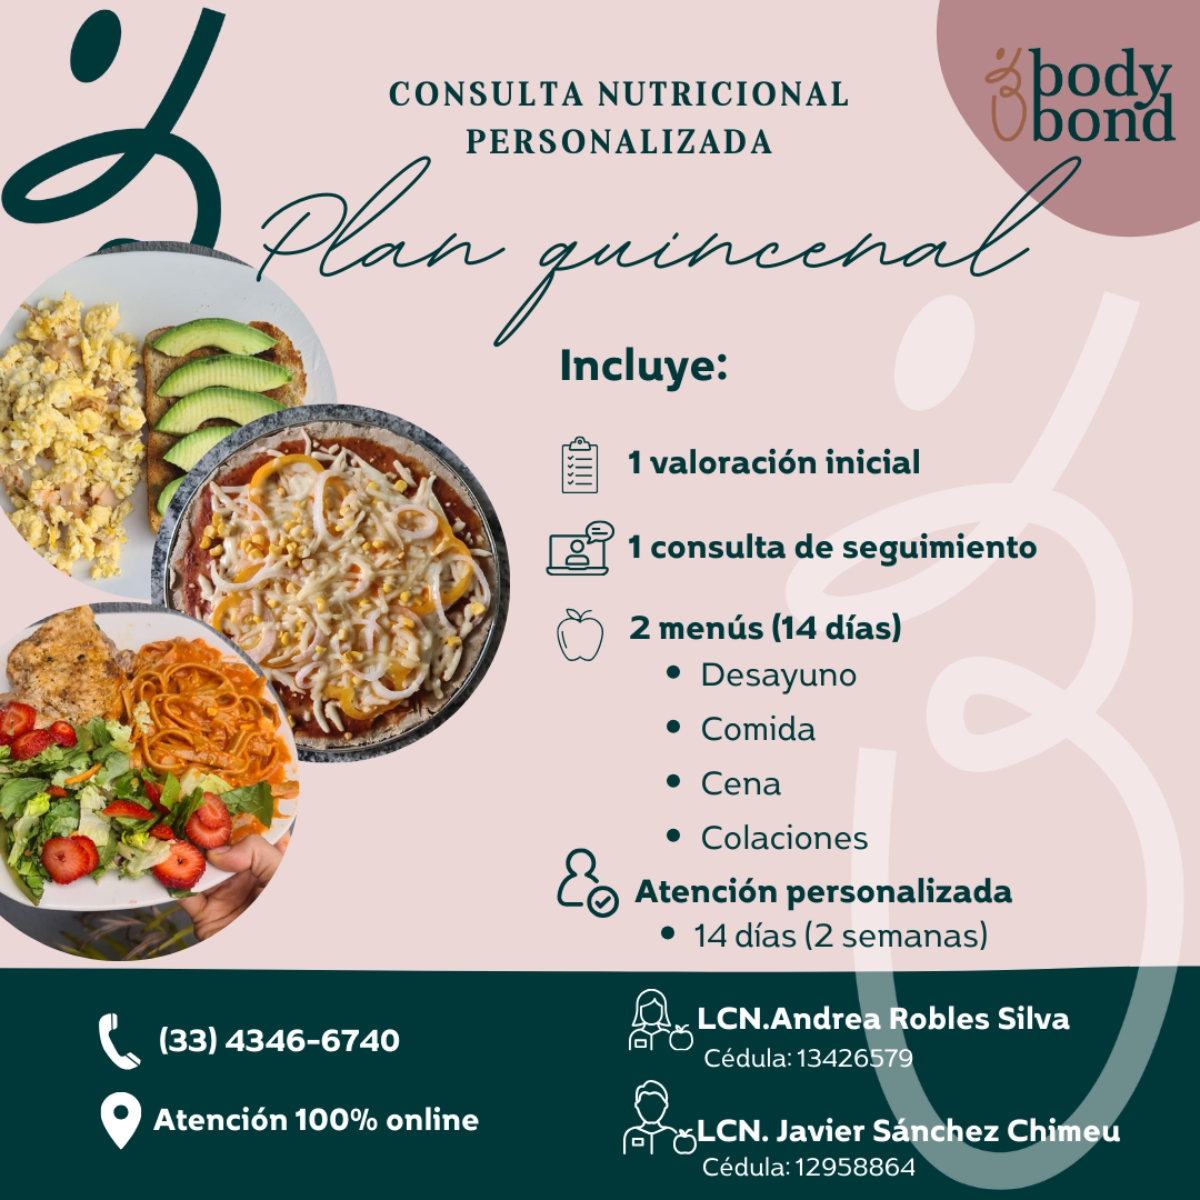 Consulta Nutricional Personalizada - Plan de Consulta Quincenal - Body Bond